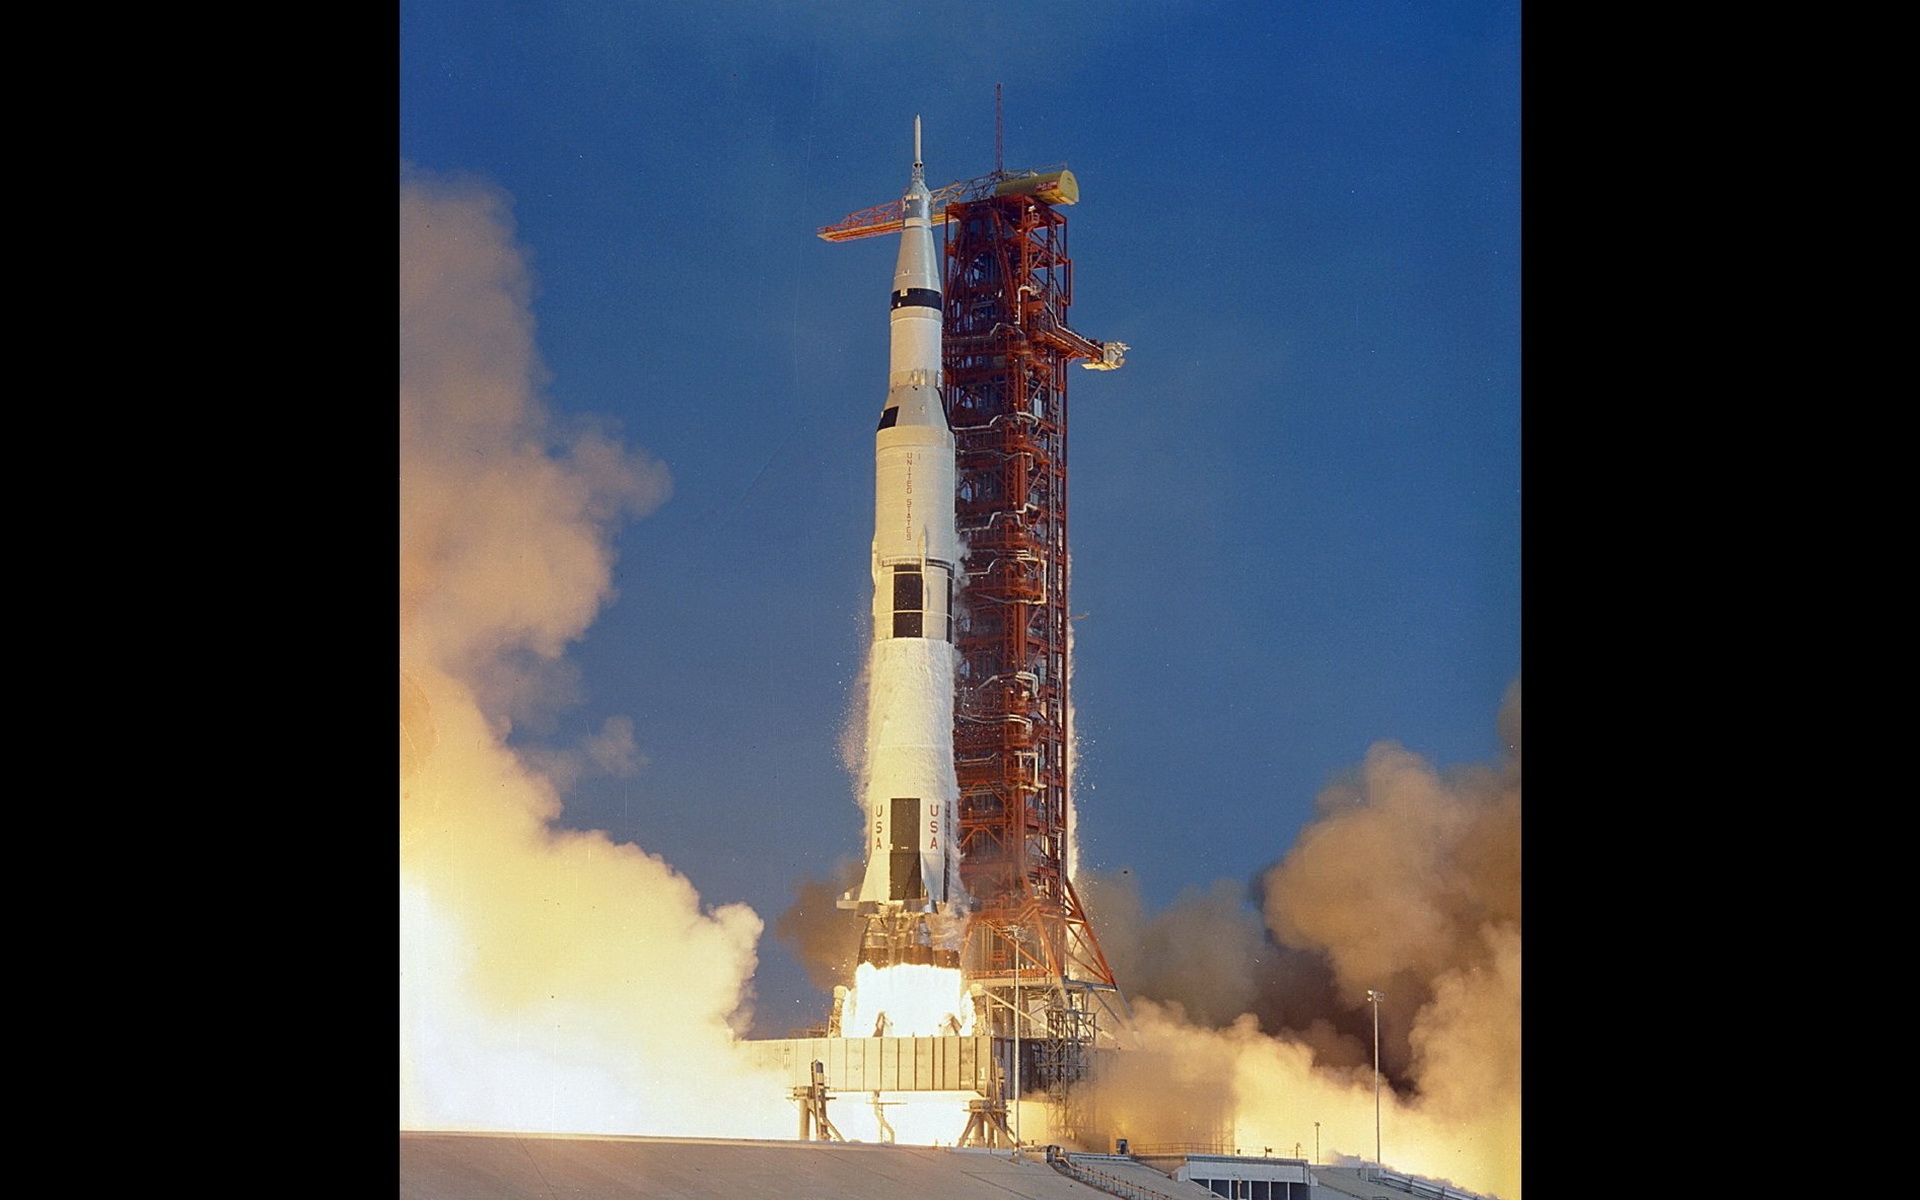 壁纸1920x1200阿波罗11 Apollo 11 珍贵照片壁纸 壁纸39壁纸 阿波罗11 （Apo壁纸 阿波罗11 （Apo图片 阿波罗11 （Apo素材 风景壁纸 风景图库 风景图片素材桌面壁纸